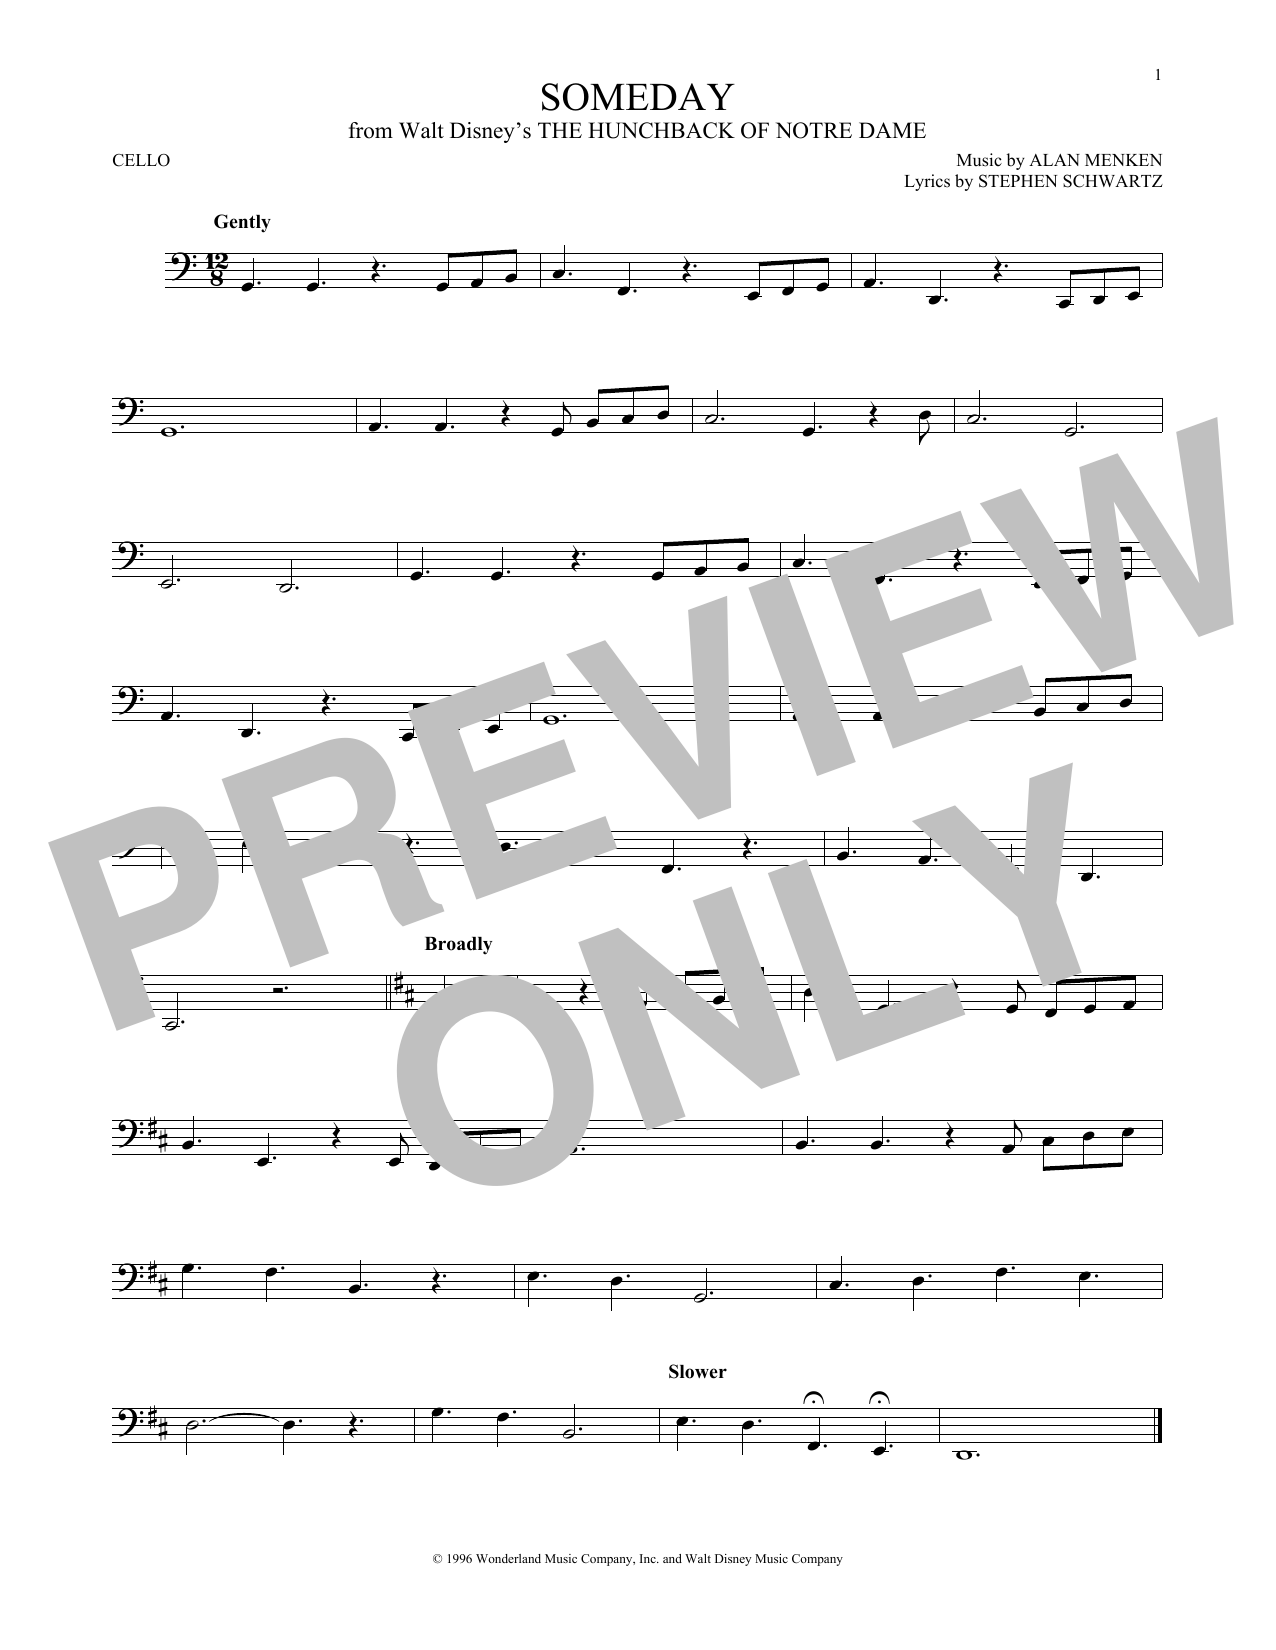 Alan Menken Someday (Esmeralda's Prayer) Sheet Music Notes & Chords for Cello - Download or Print PDF